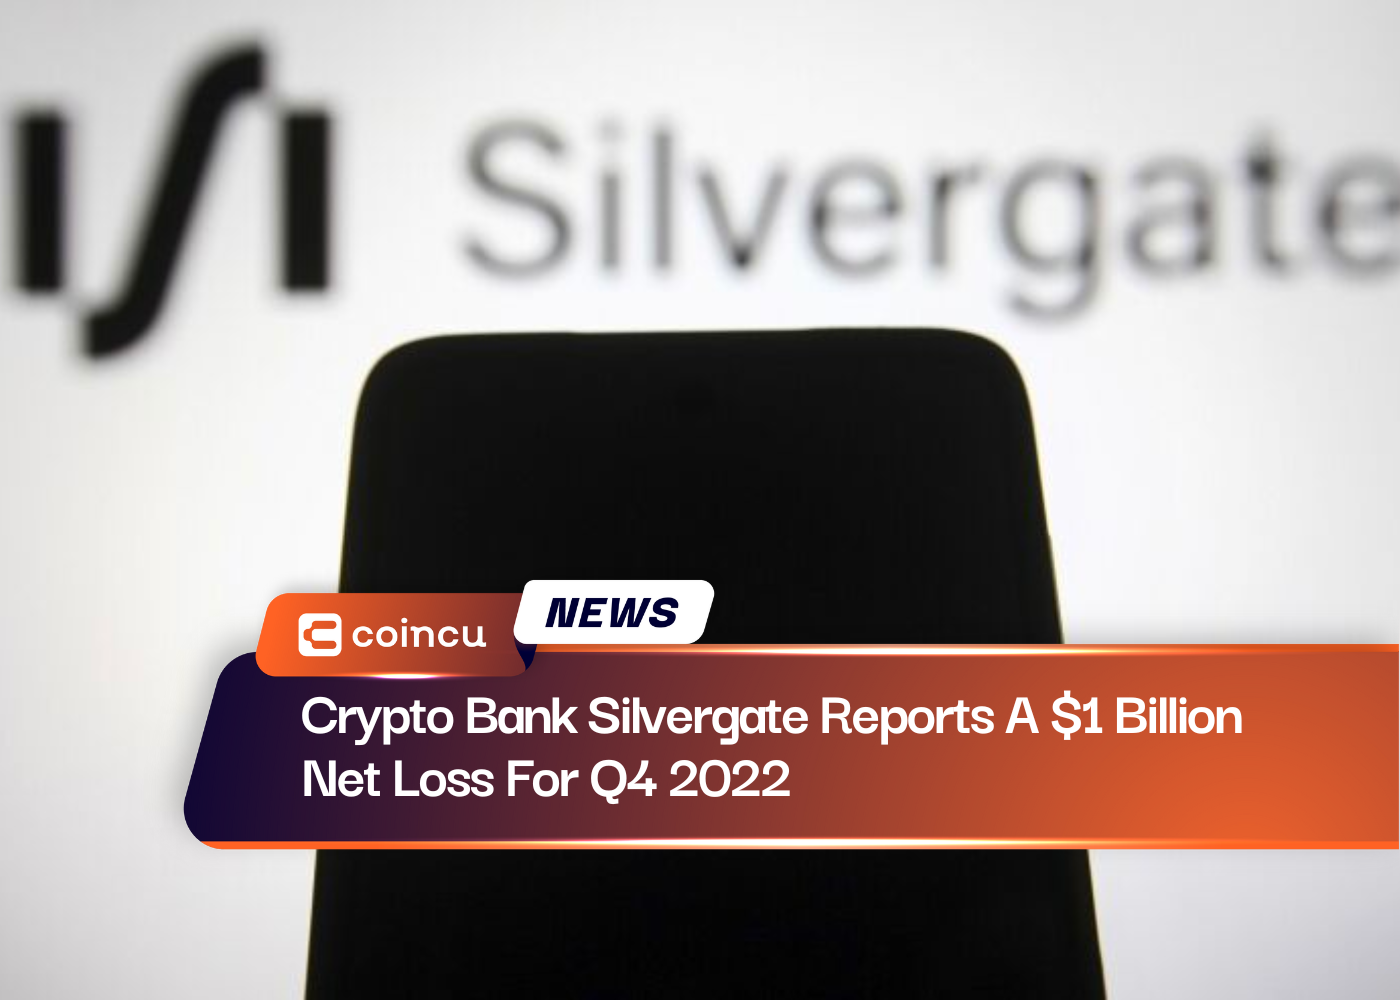 Ngân hàng tiền điện tử Silvergate báo cáo khoản lỗ ròng 1 tỷ đô la trong quý 4 năm 2022